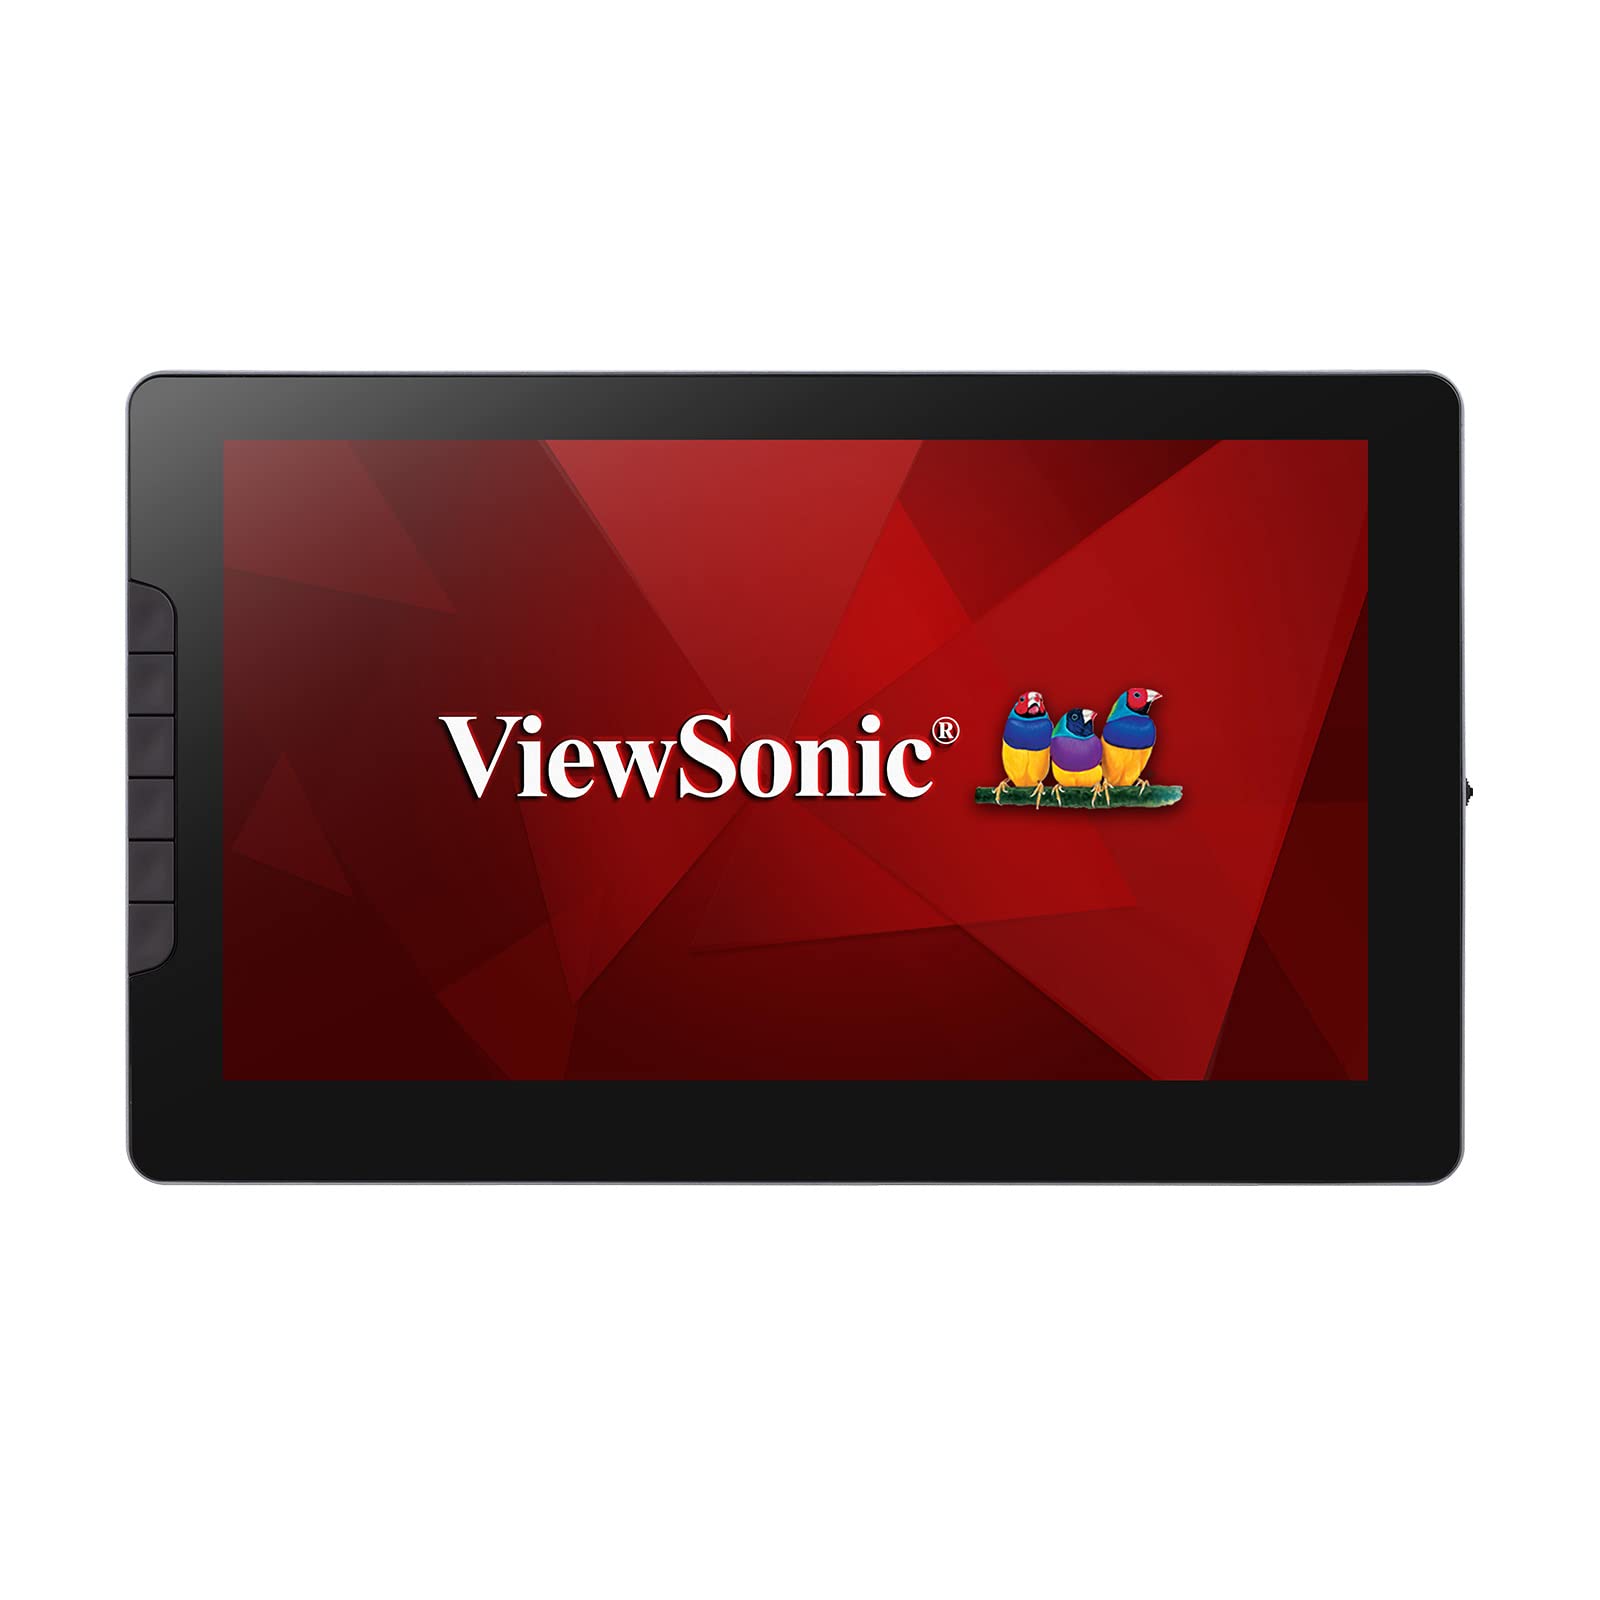 Viewsonic ID1330 (33,7 cm) (13,3 Zoll) PenDisplay Tablet zum Zeichnen und Schreiben (Full-HD, IPS Display, Touch Funktion inkl. druckempfindlichem Stift, USB-C, Windows/MacOS/Android) Silber-Schwarz